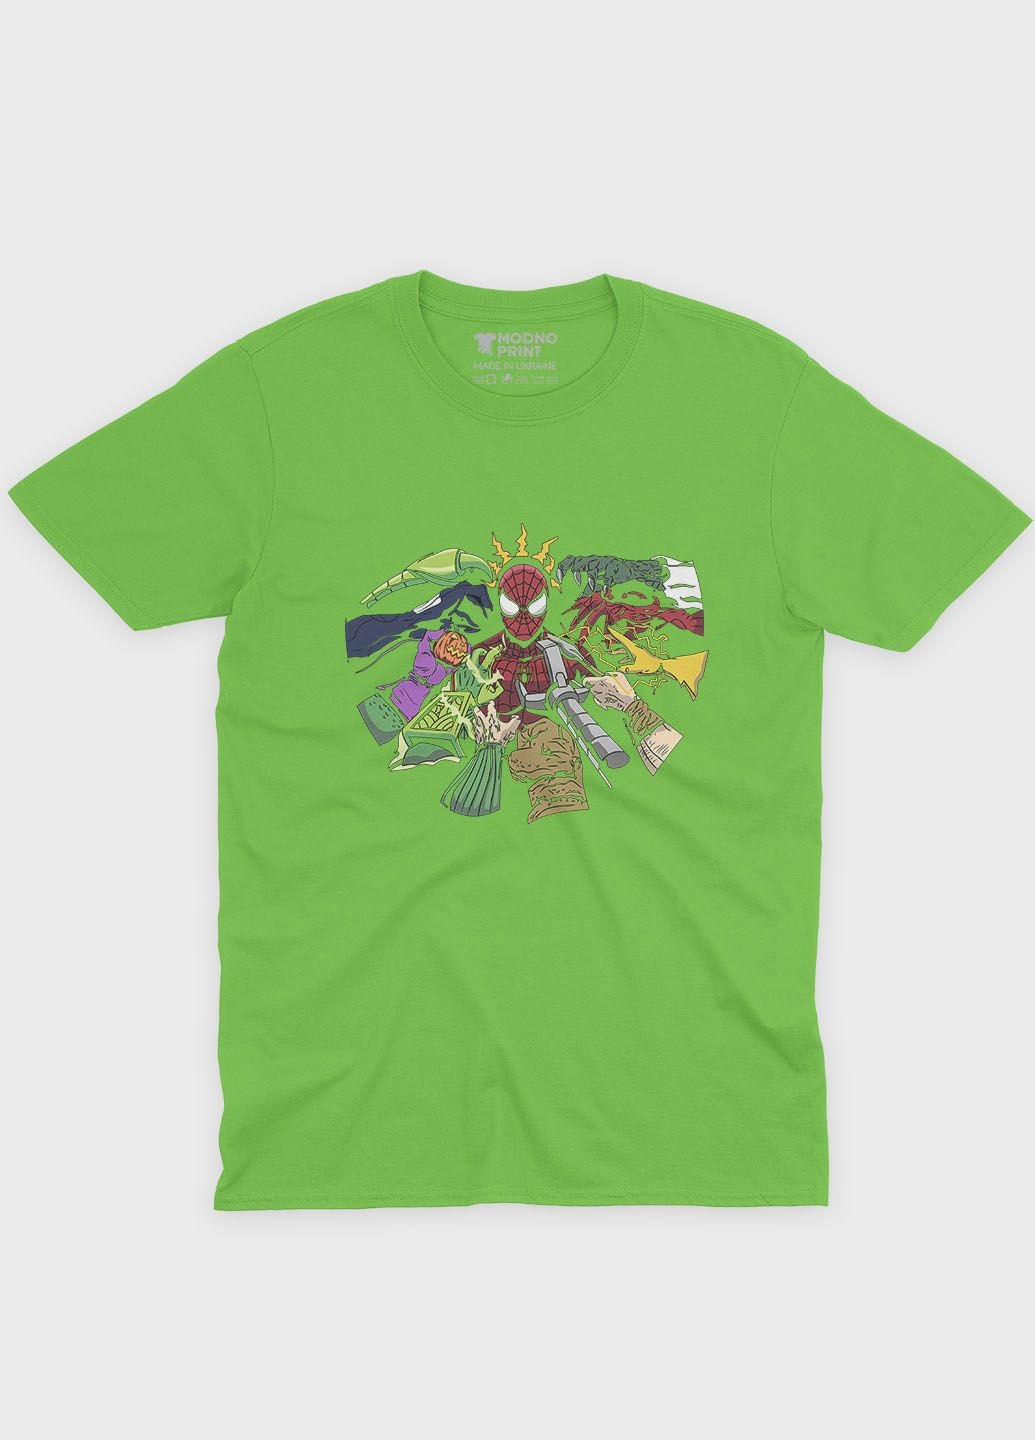 Салатовая демисезонная футболка для мальчика с принтом супергероя - человек-паук (ts001-1-kiw-006-014-014-b) Modno